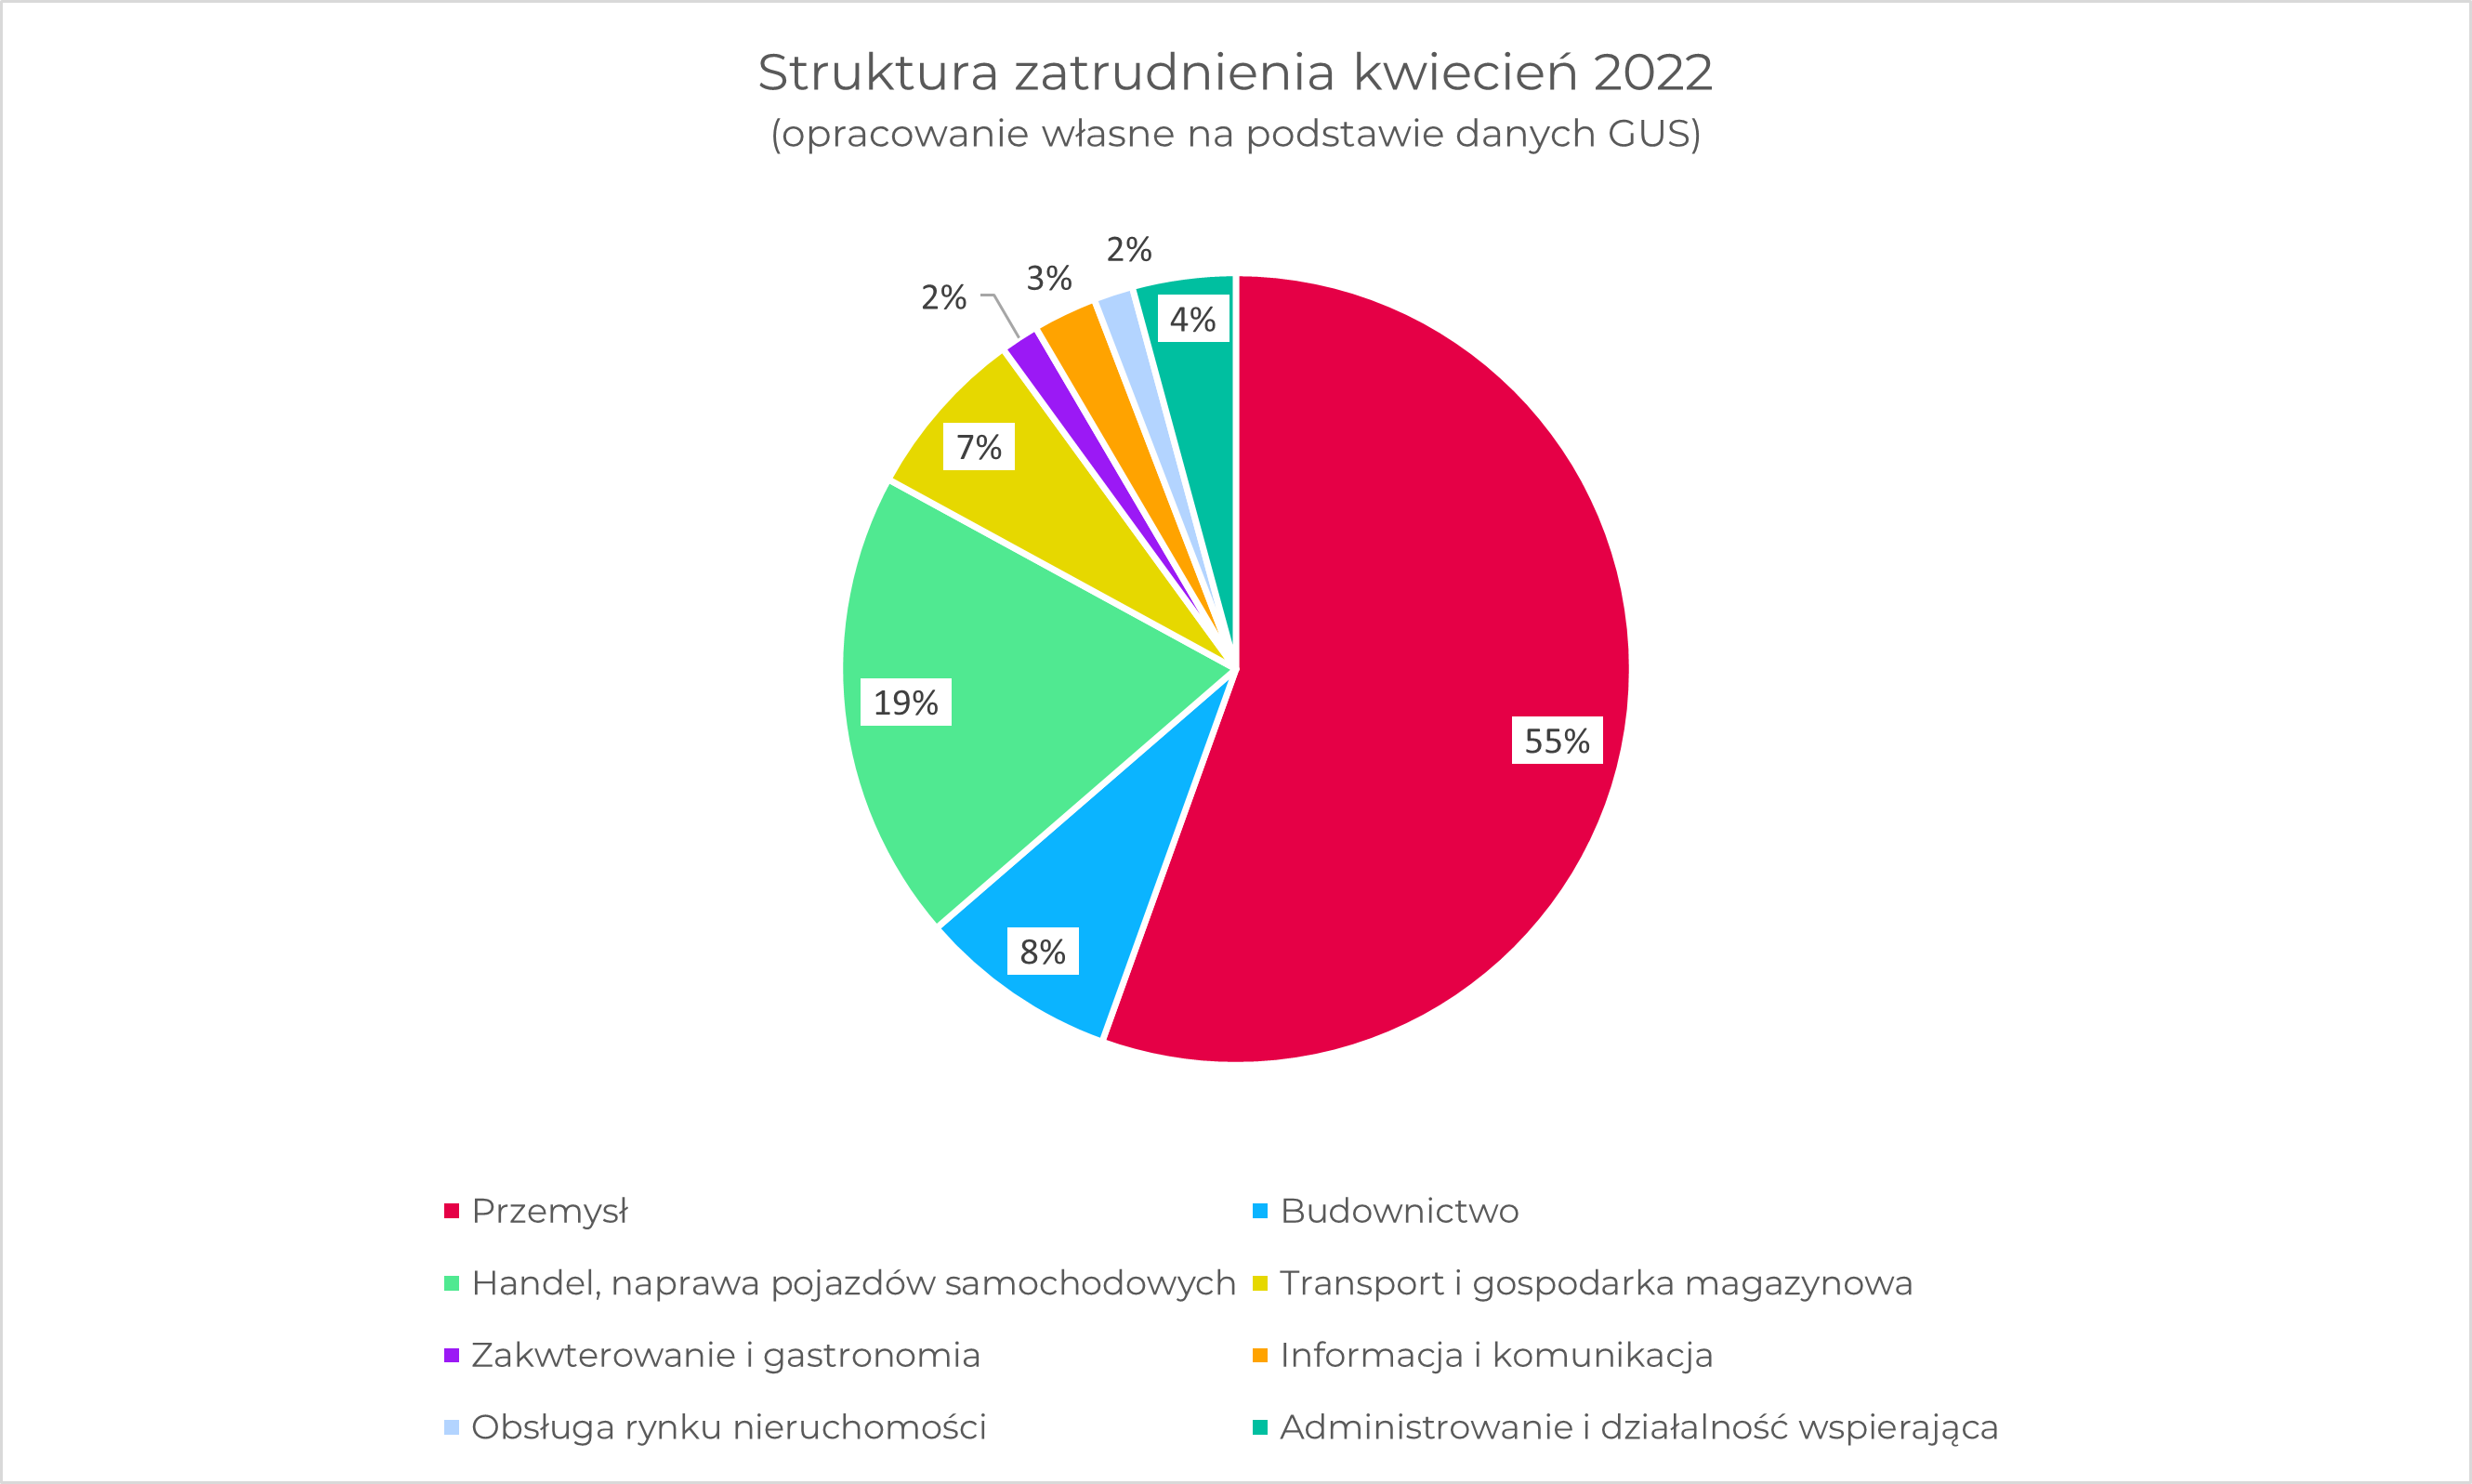 Struktura zatrudnienia - kwiecień 2022 (diagram kołowy)